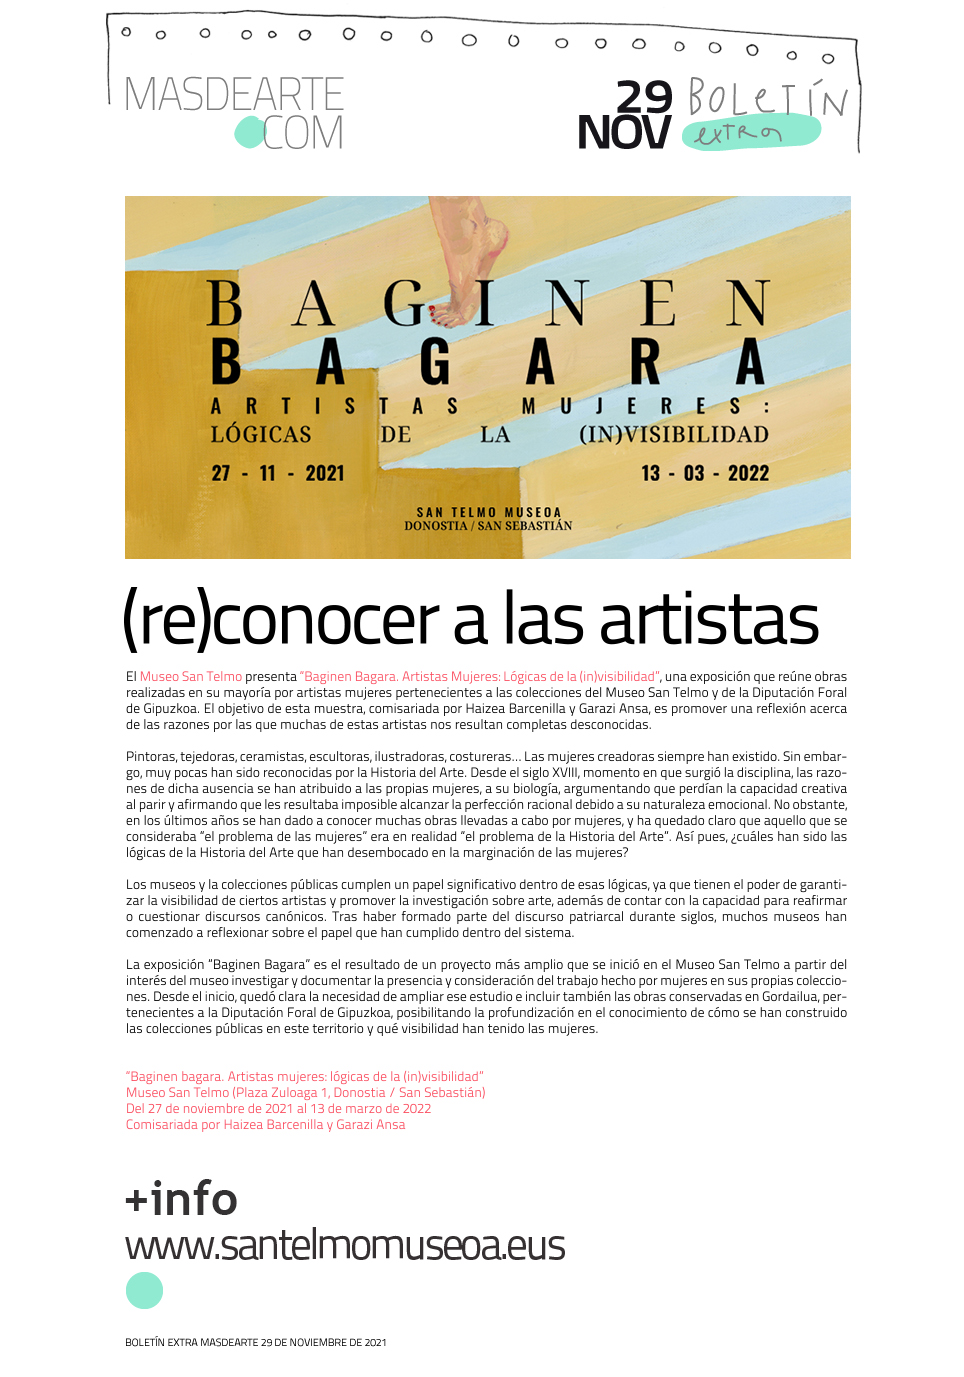 Extra masdearte: Baginen Bagara. Artistas Mujeres: Lógicas de la (in)visibilidad en Museo San Telmo